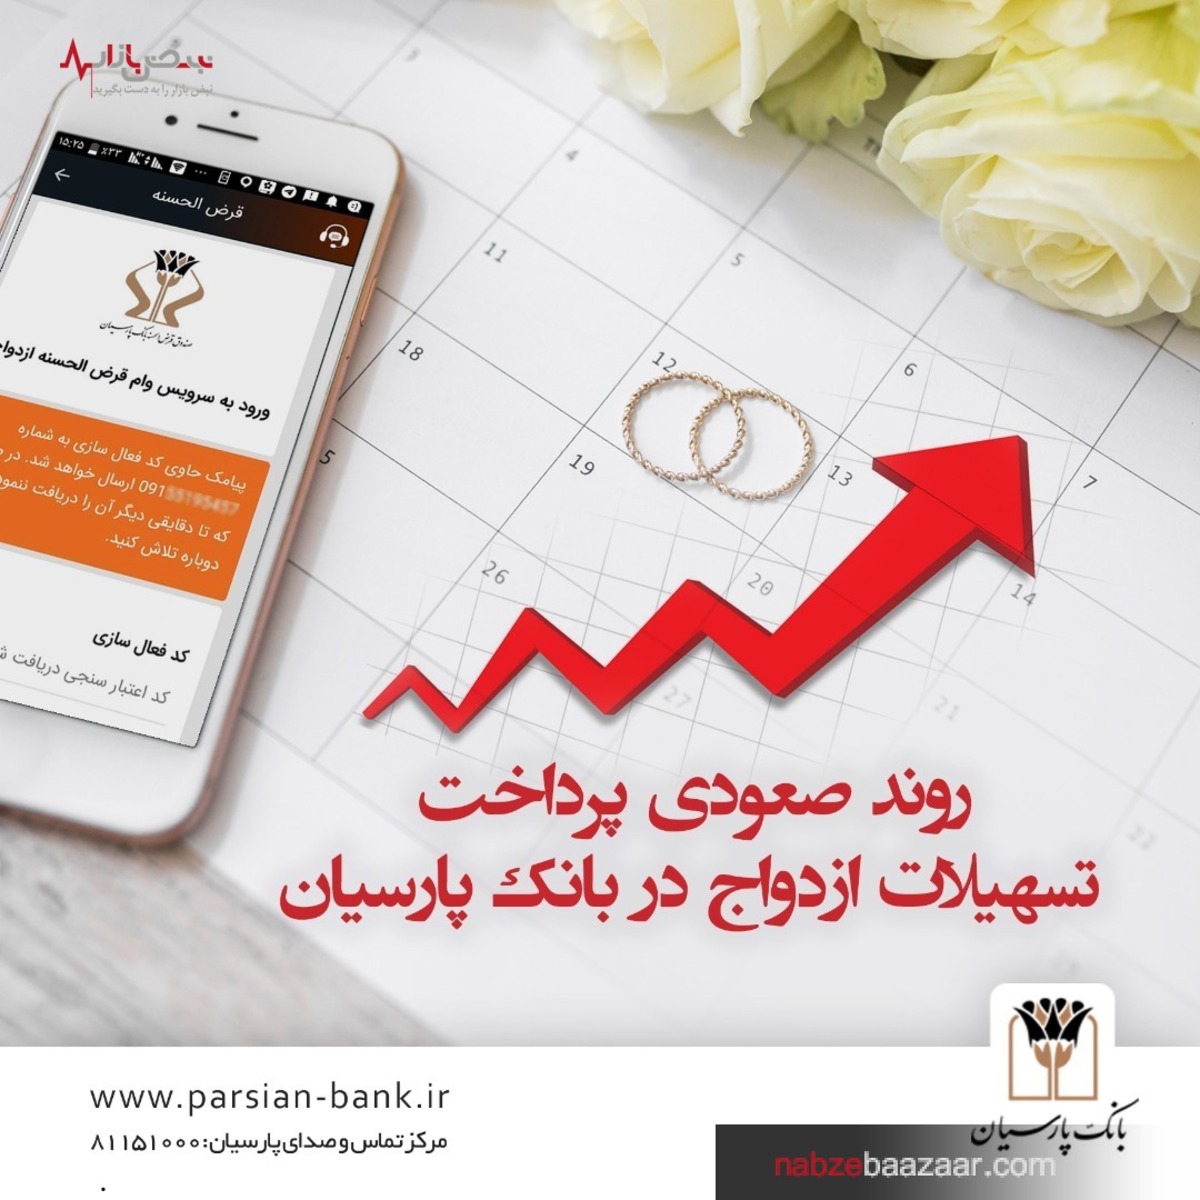 روند صعودی پرداخت تسهیلات ازدواج در بانک پارسیان / پرداخت ۴ هزار و ۵۲۹ میلیارد ریال تسهیلات ازدواج در ۹ ماهه سال ۱۴۰۰